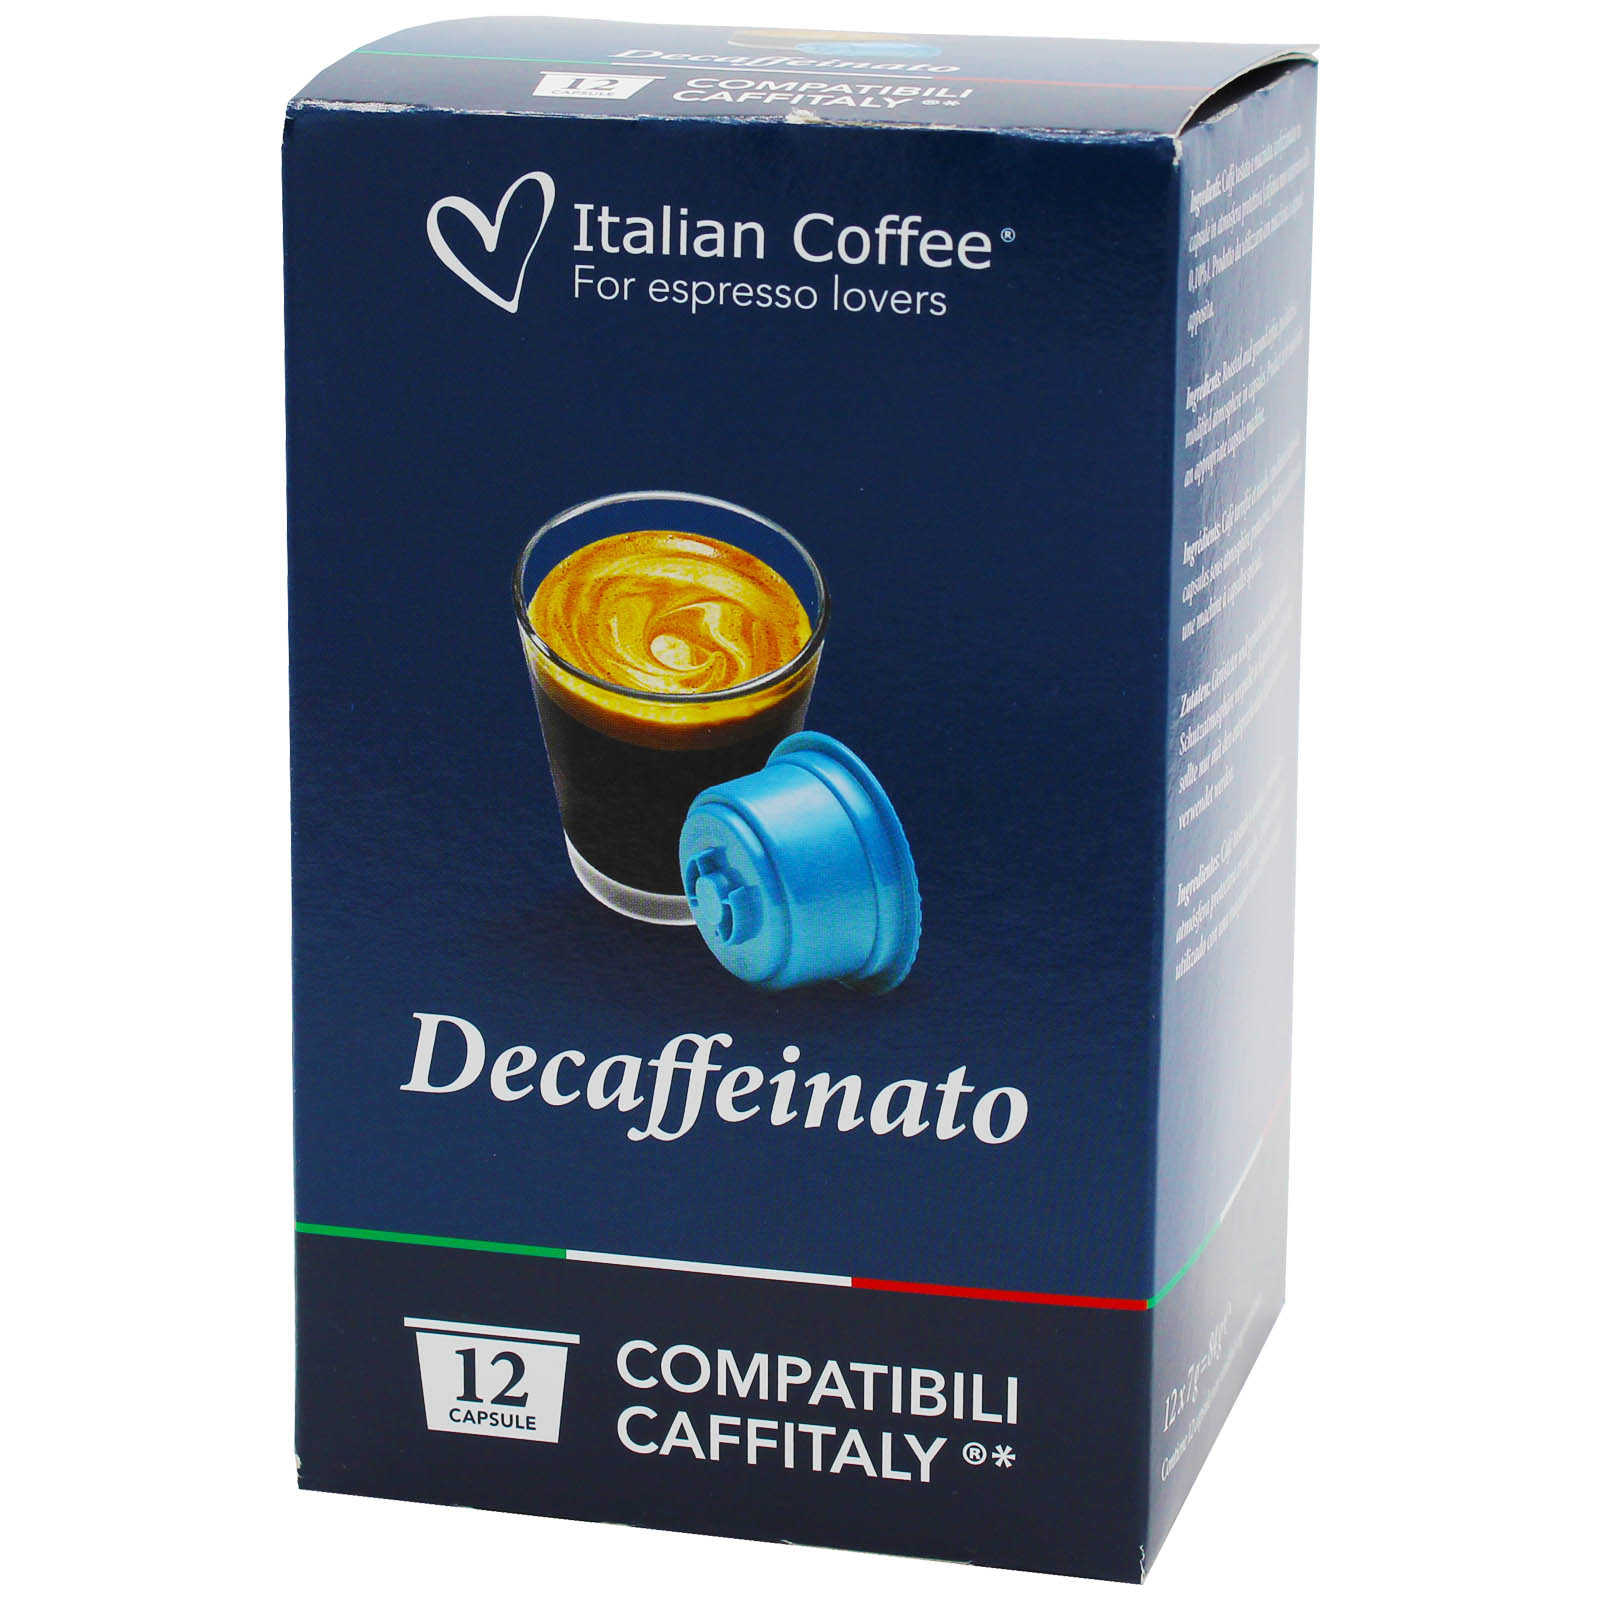 Cafea Deca Karma, 12 capsule compatibile Caffitaly/Cafissimo/Beanz, Italian Coffee